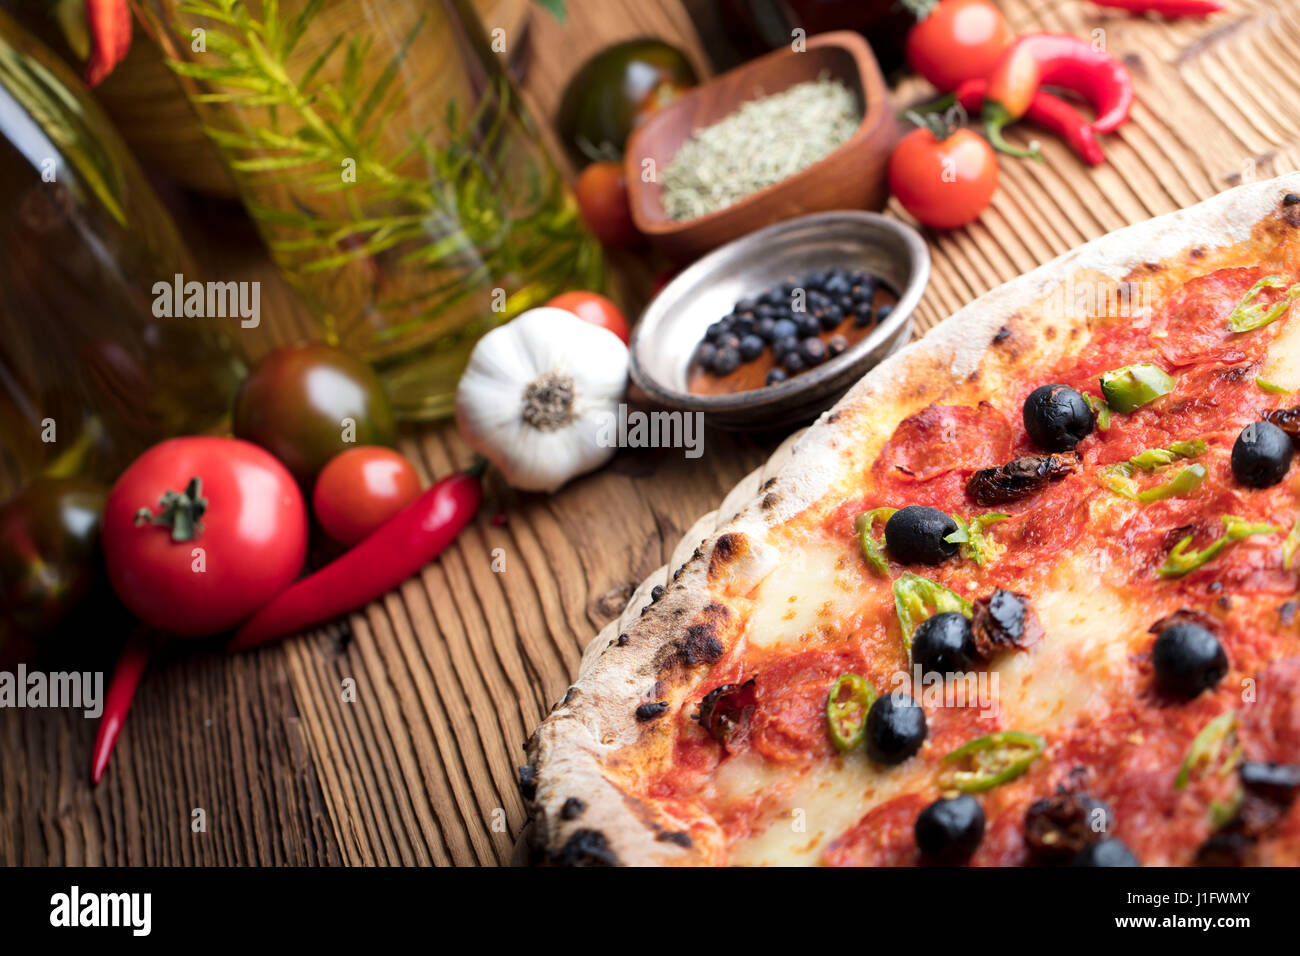 Concept alimentaire italienne, romarin huile d'olive, de l'alimentation saine Banque D'Images